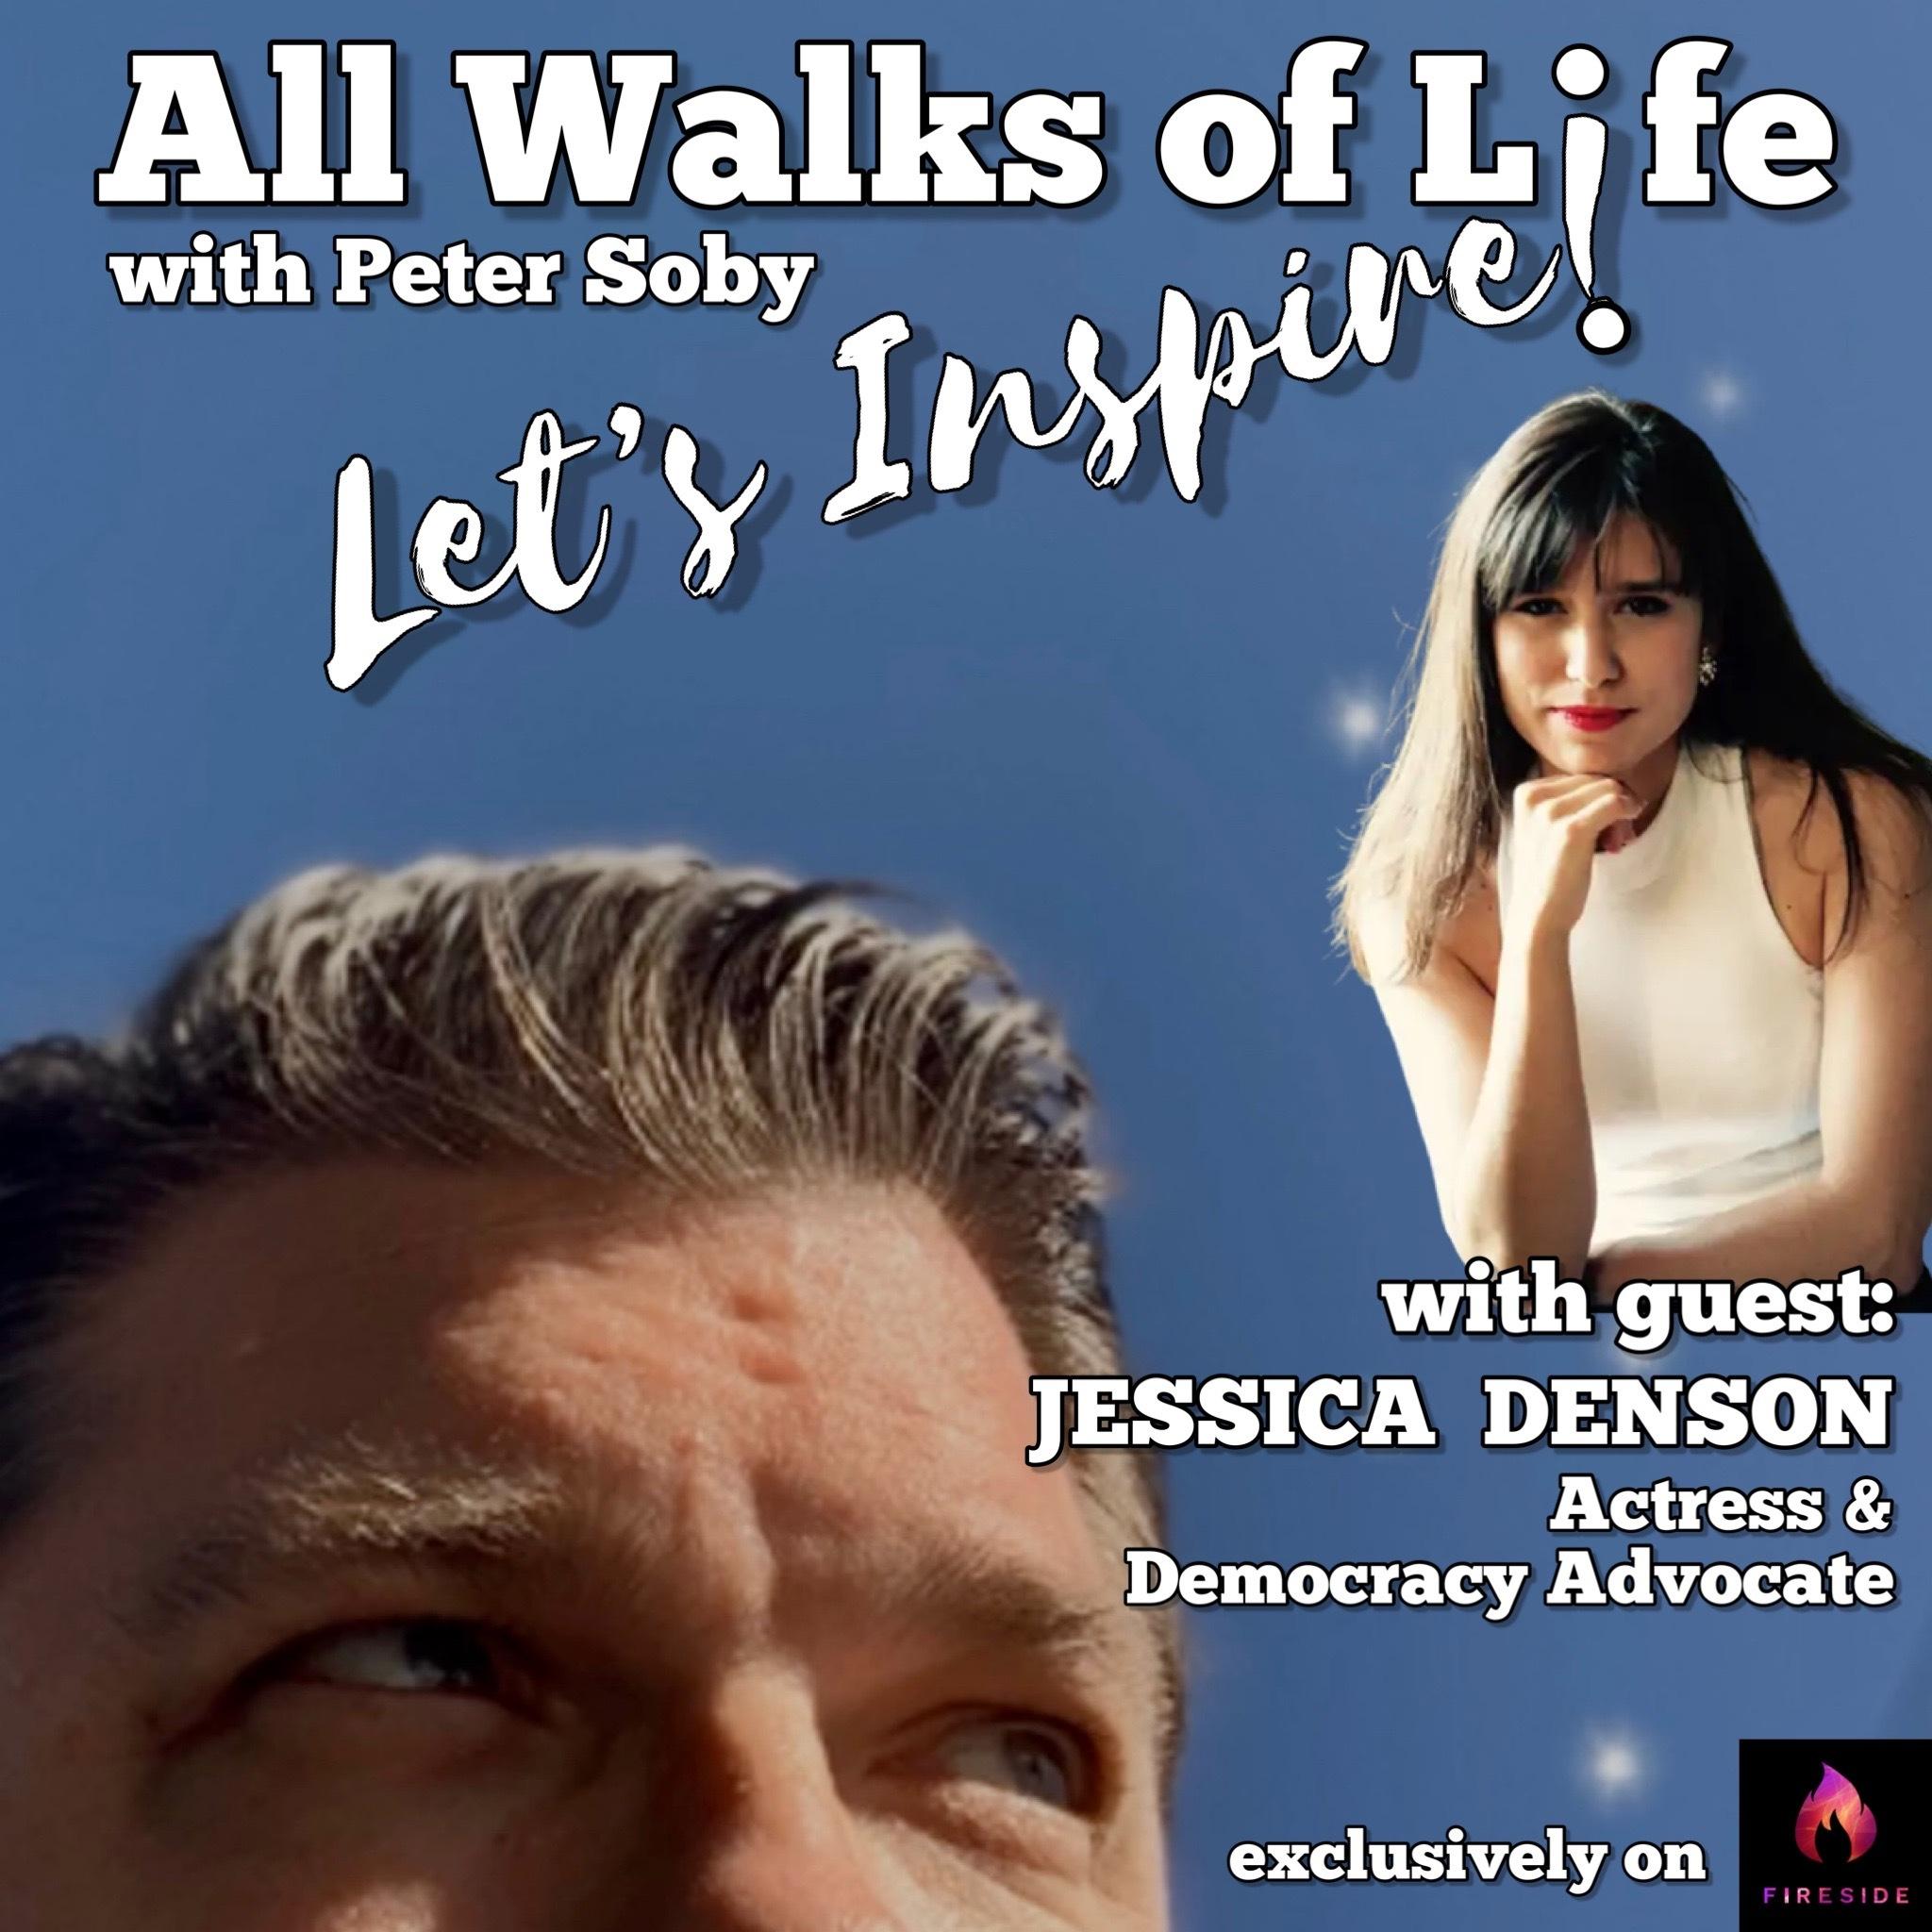 Guest: Jessica Denson